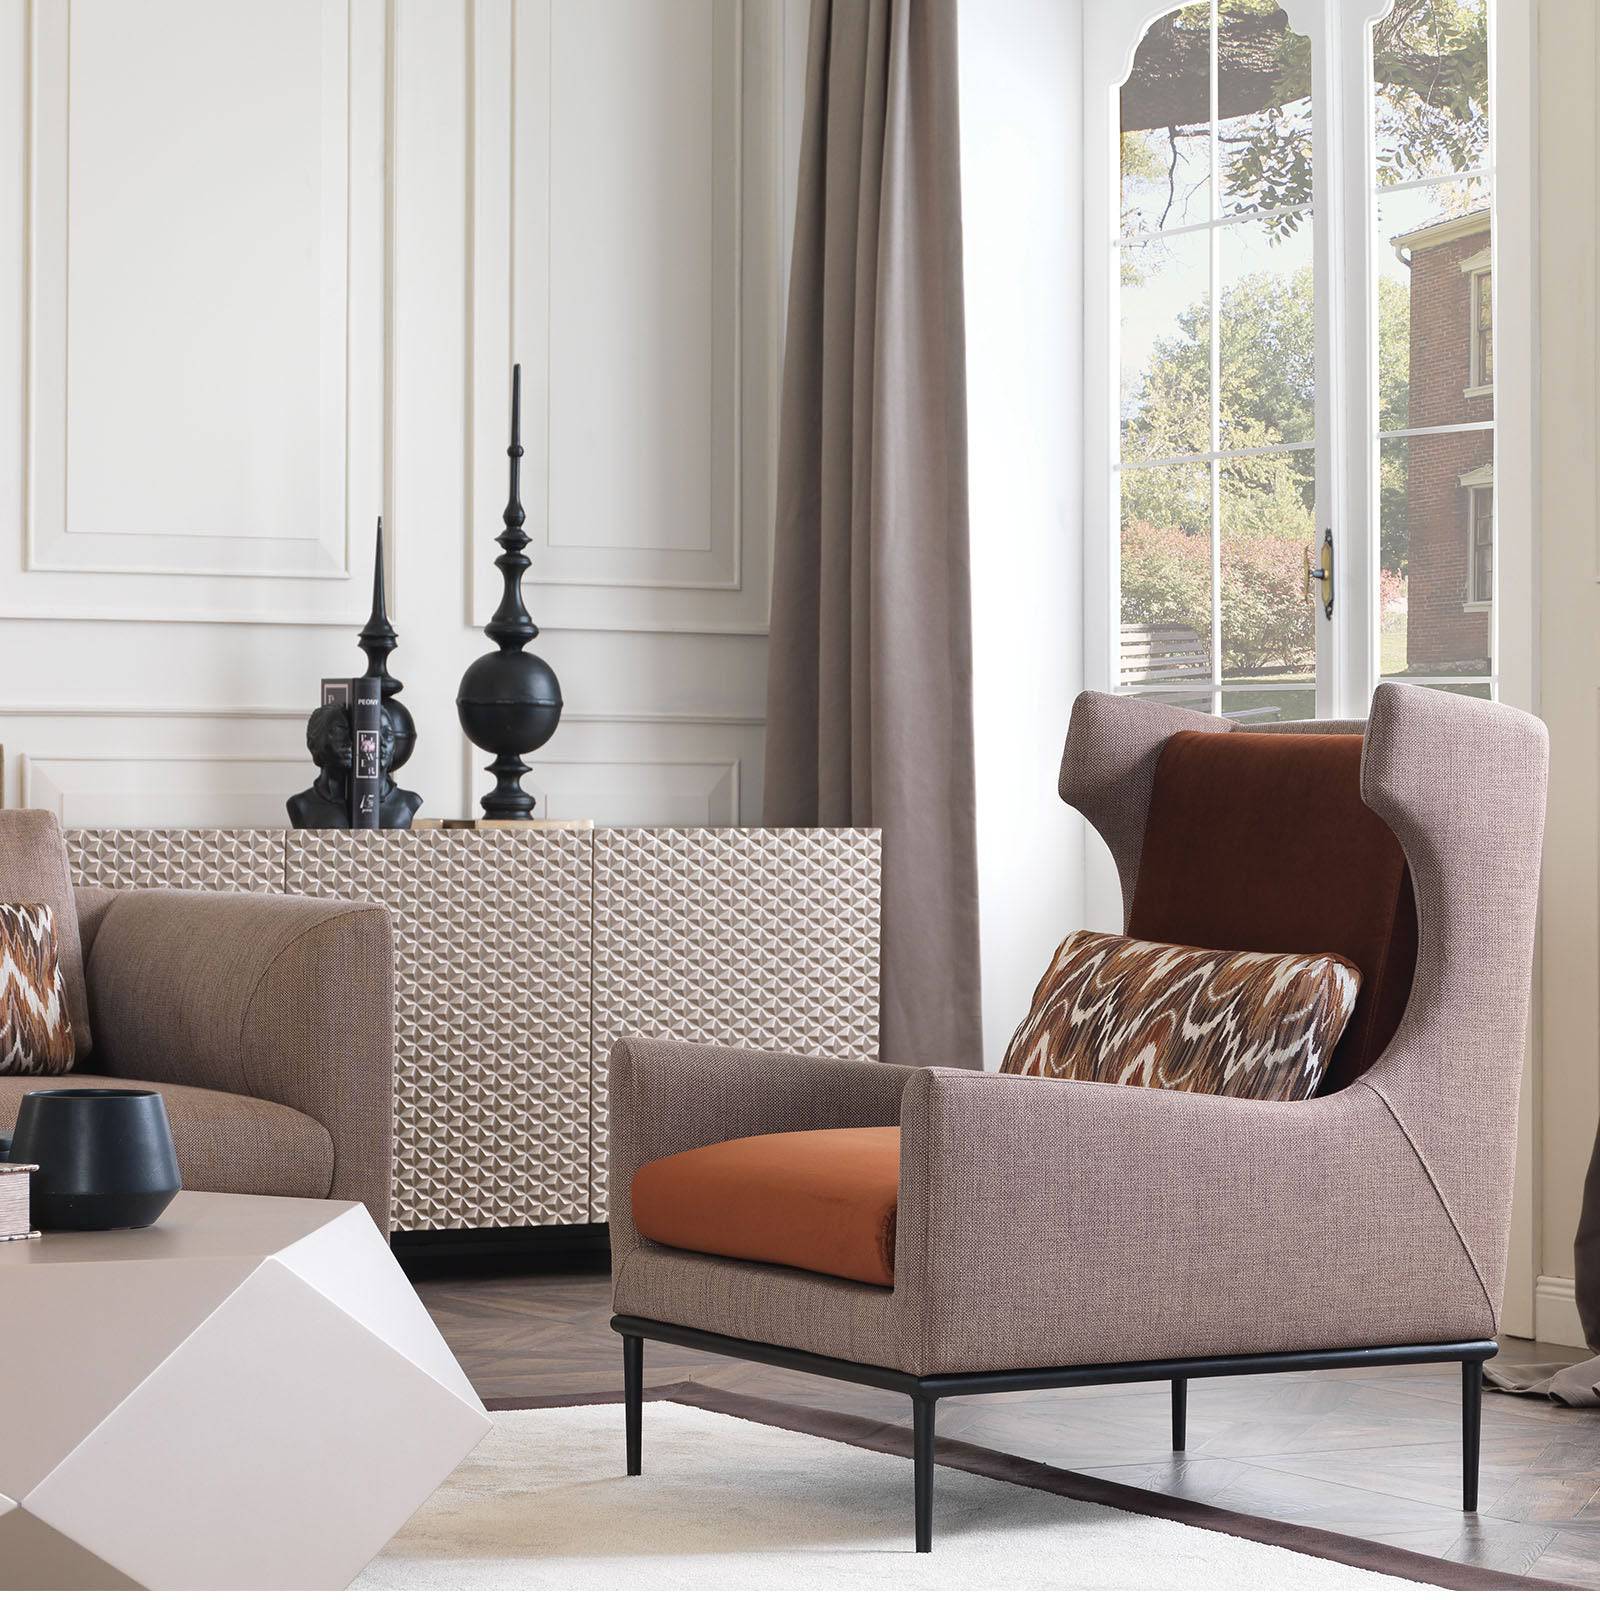 Vittoria Lounge Chair Vittoria001 -  Lounge Chairs | كرسي صاله من فيتوريا - ebarza Furniture UAE | Shop Modern Furniture in Abu Dhabi & Dubai - مفروشات ايبازرا في الامارات | تسوق اثاث عصري وديكورات مميزة في دبي وابوظبي